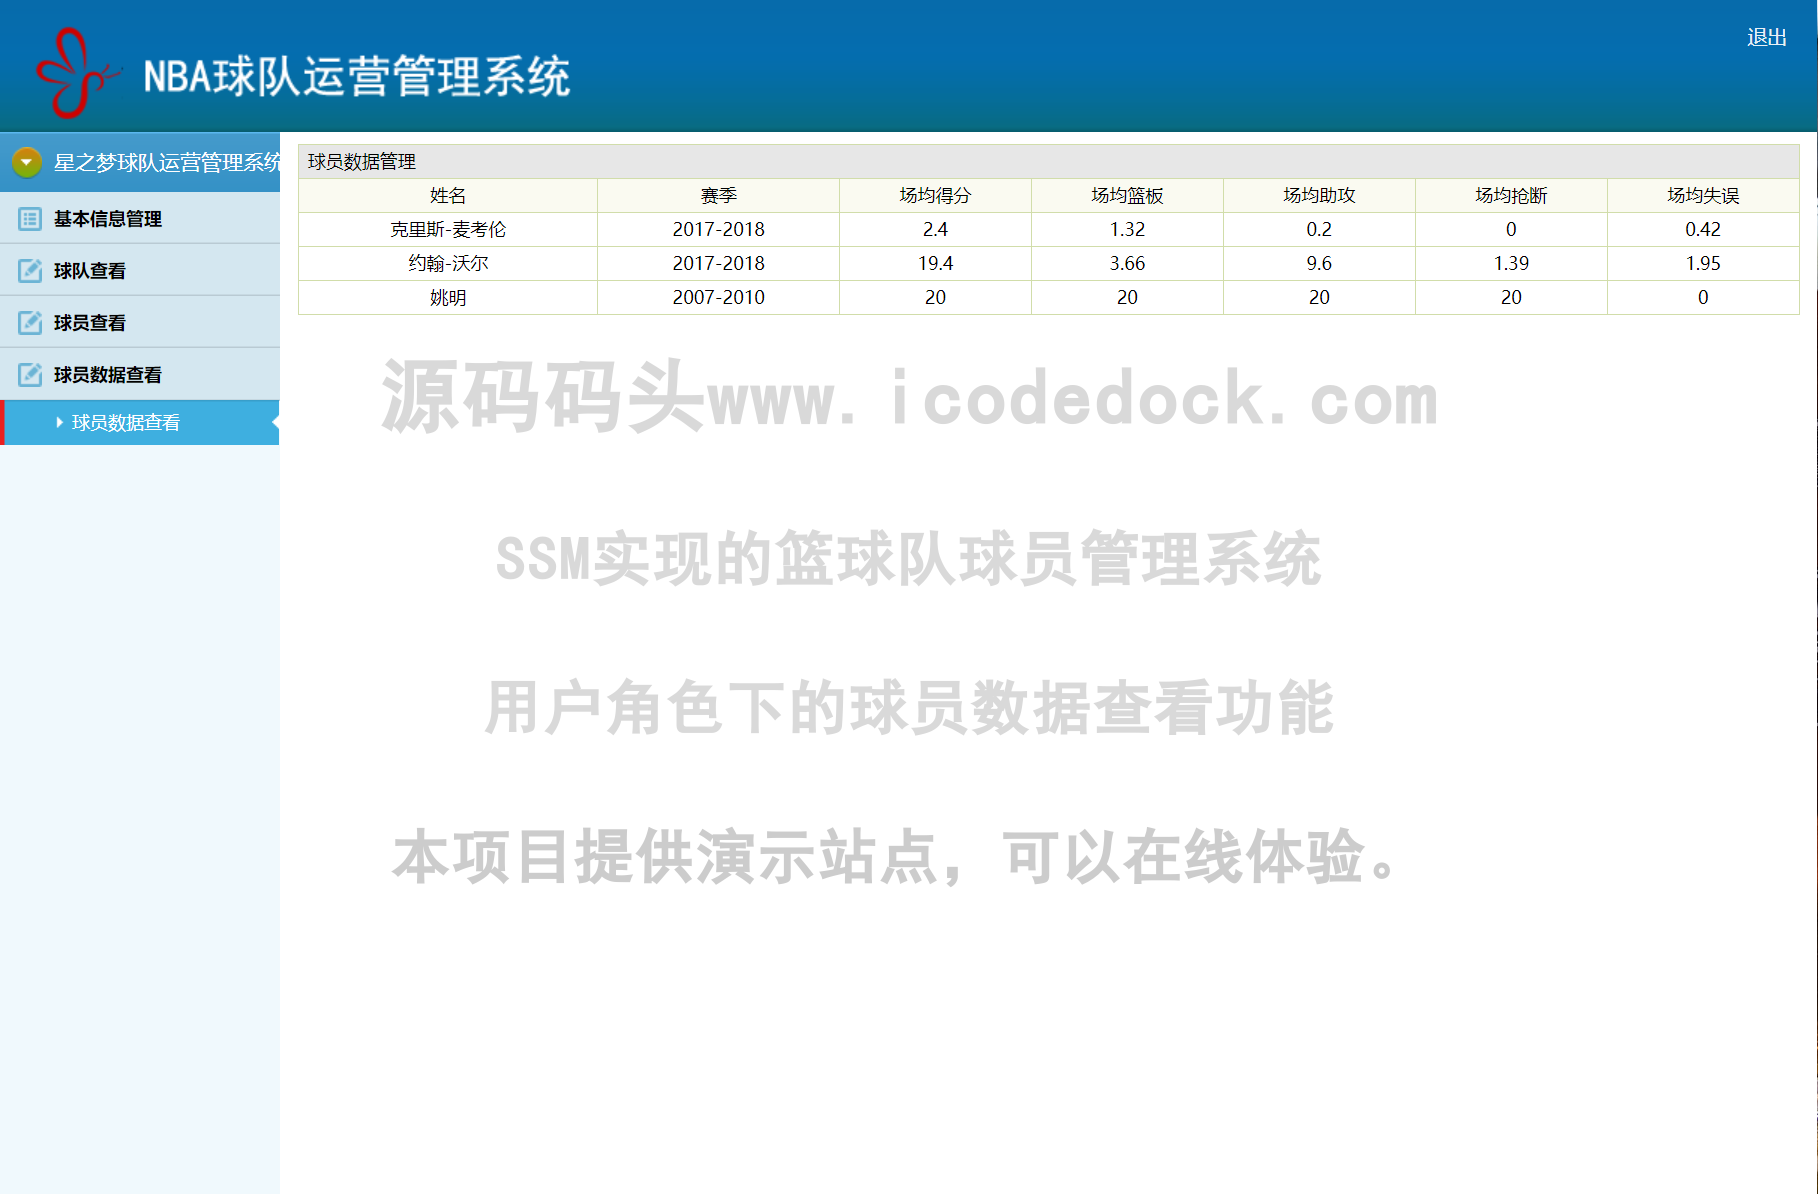 源码码头-SSM实现的篮球队球员管理系统-用户角色-球员数据查看